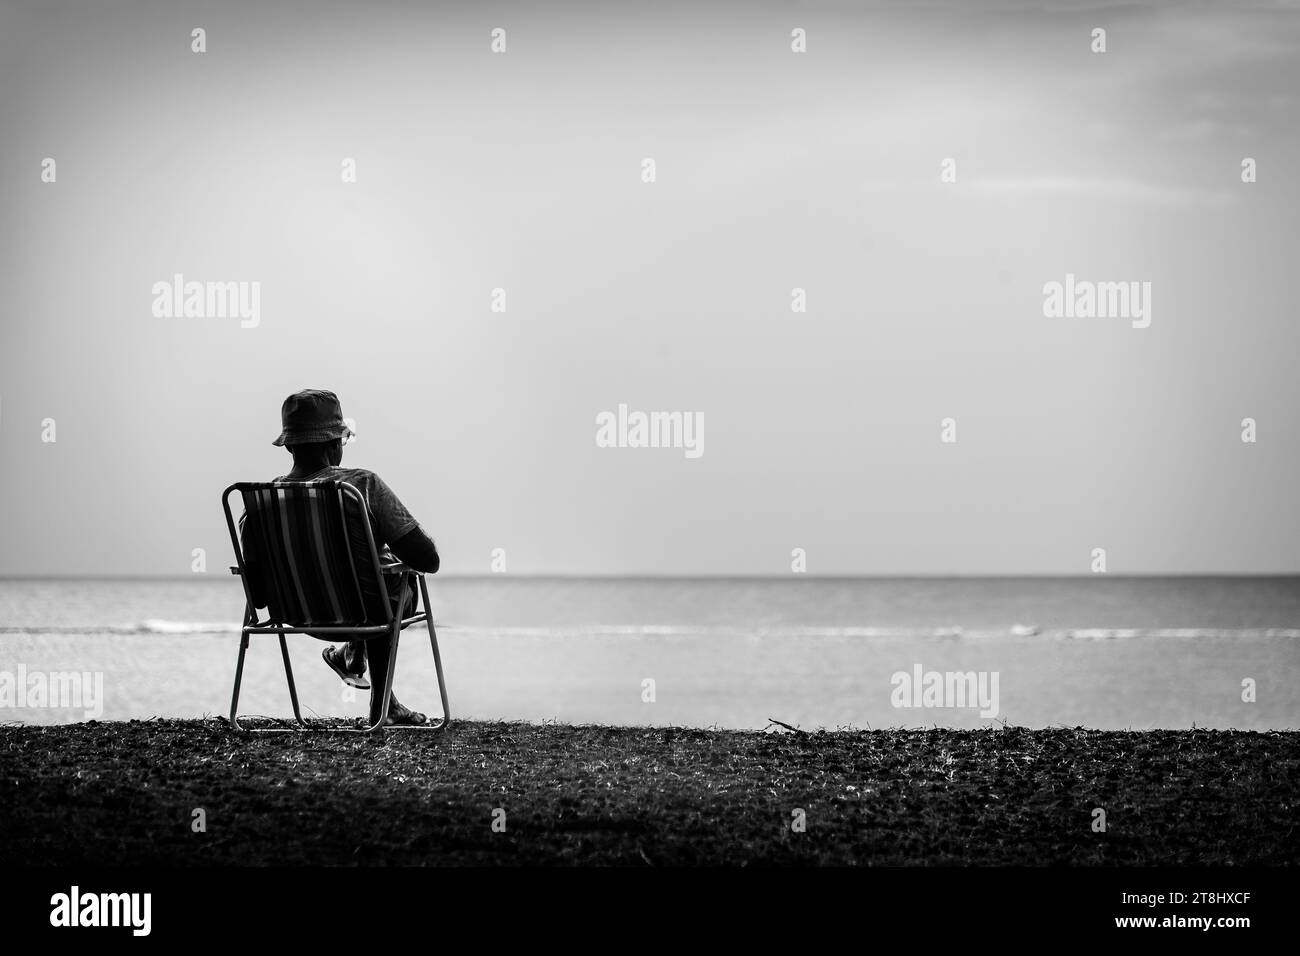 Image artistique en noir et blanc d'un homme solitaire assis sur une chaise de camping près de la plage et lisant un livre. Banque D'Images